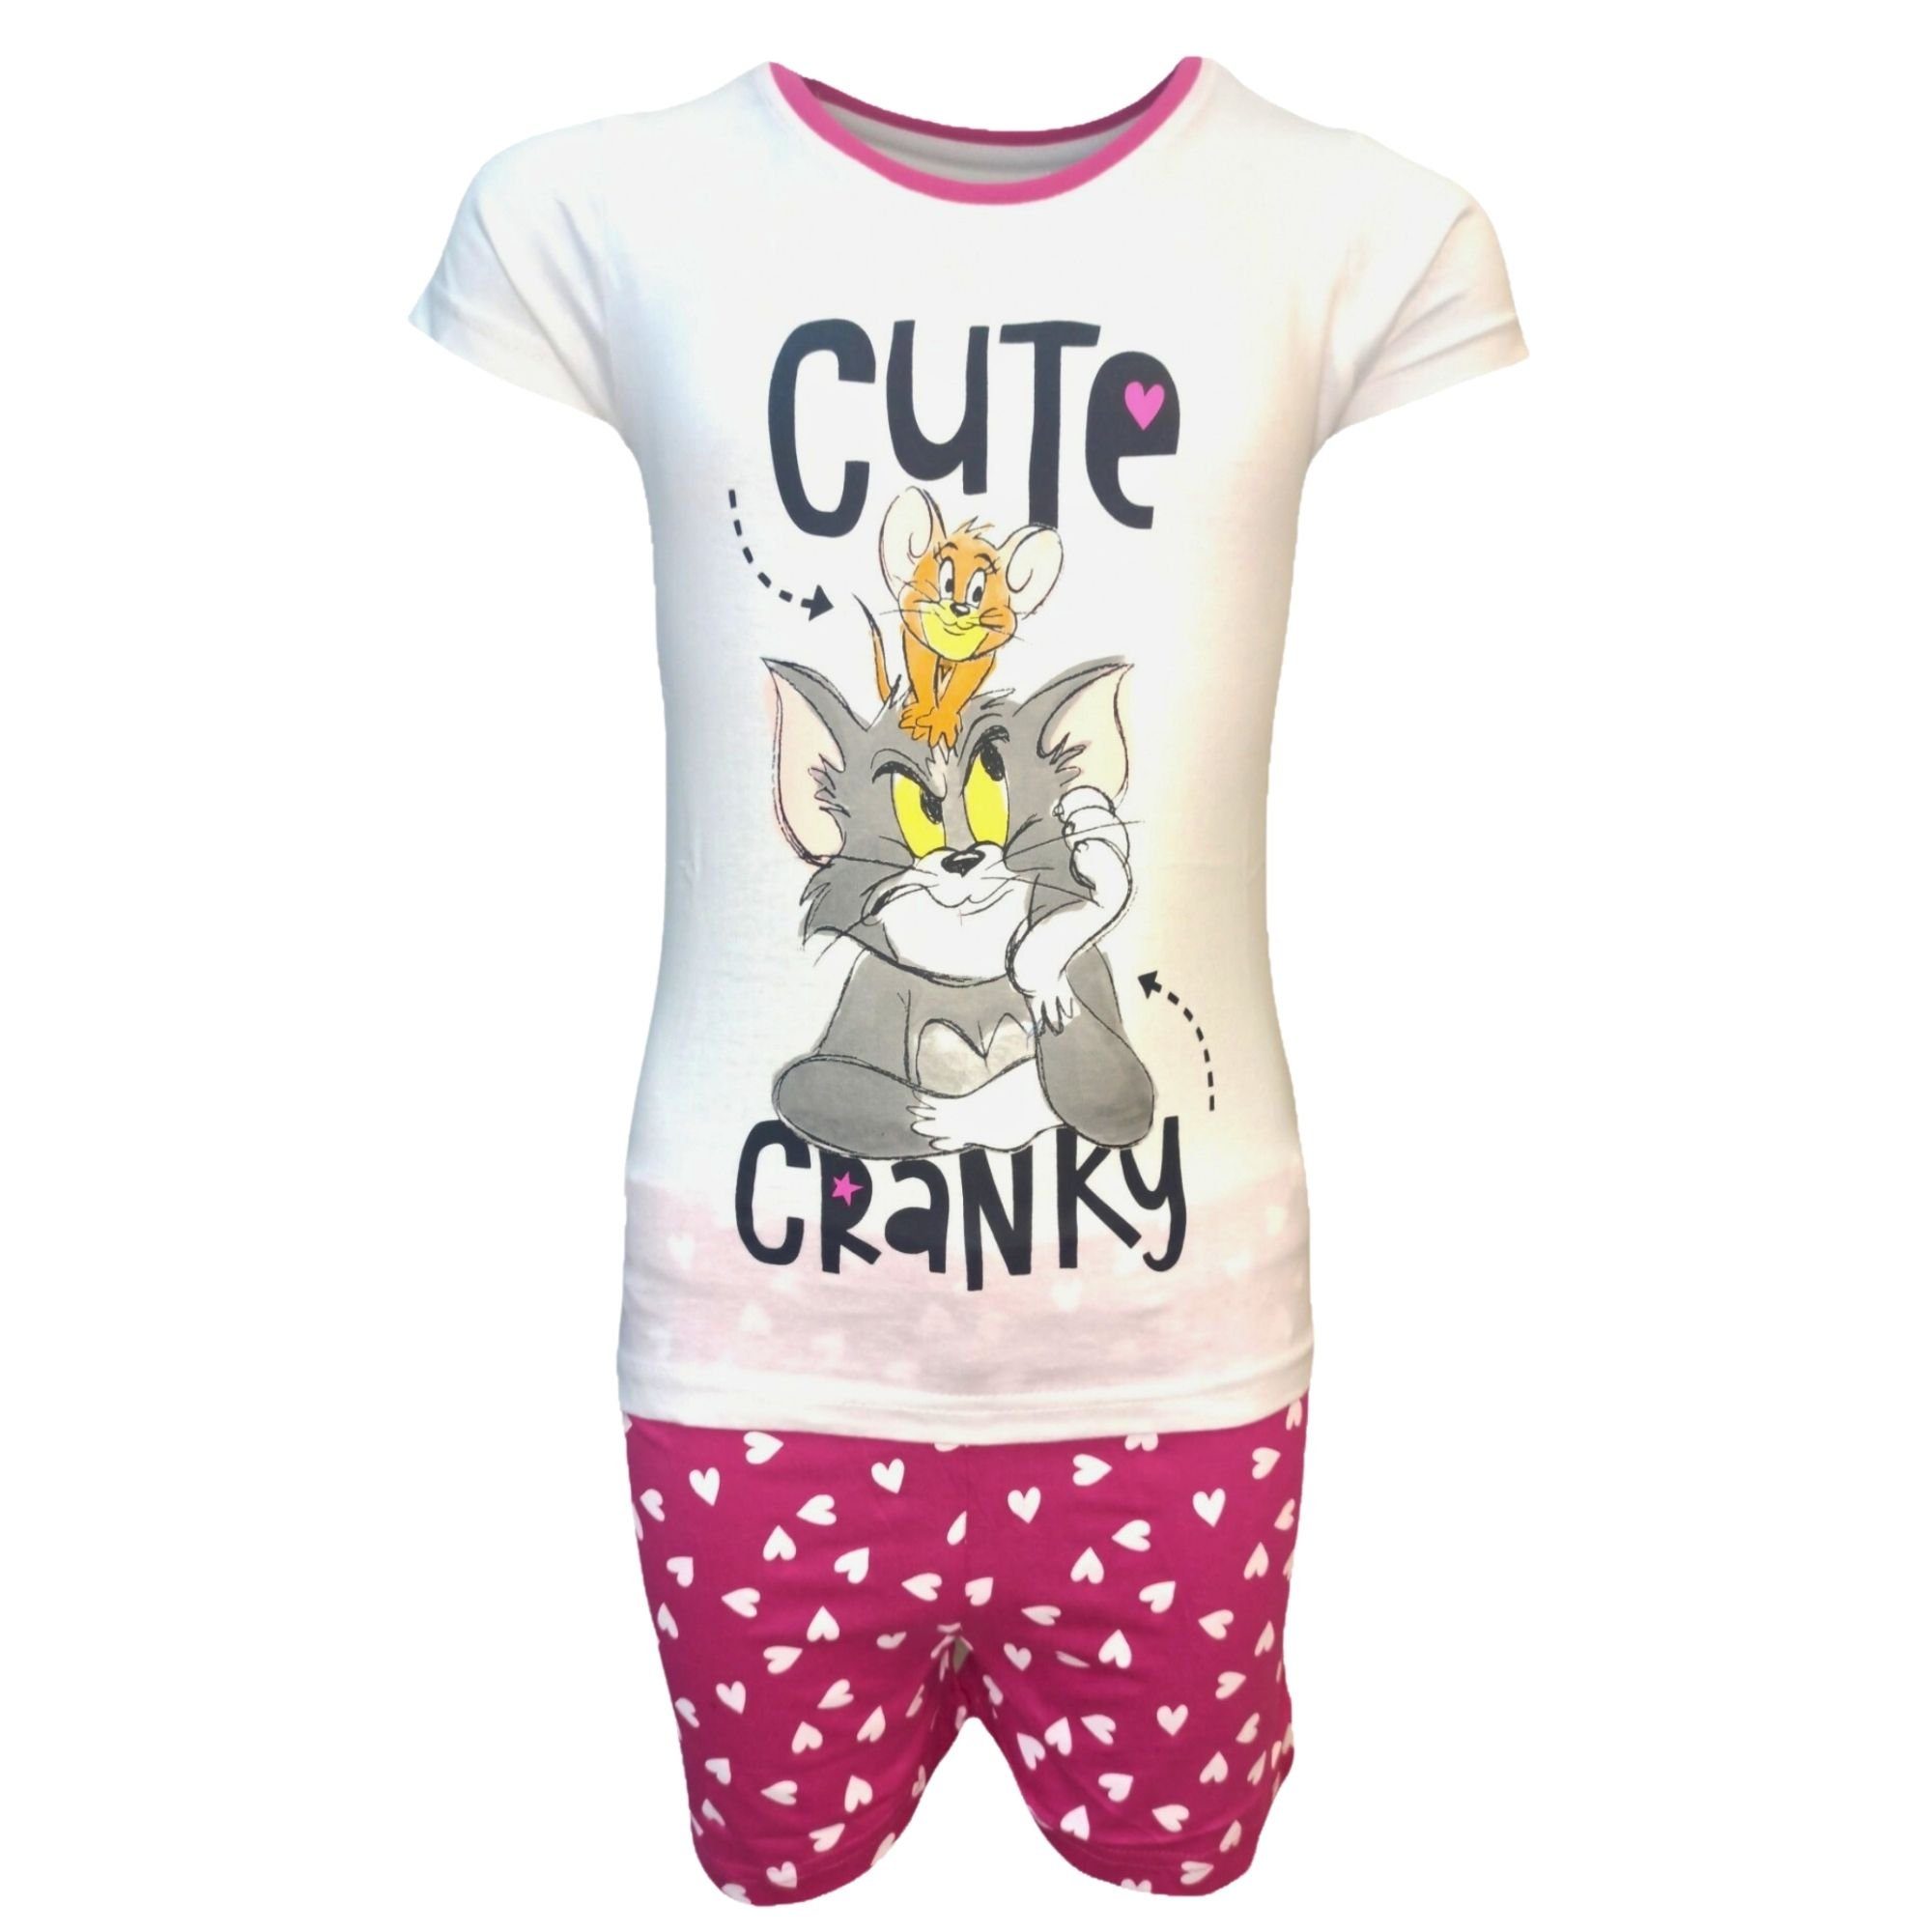 Tom & Jerry Schlafanzug cute cranky (2 tlg) Pyjama Set kurz - Mädchen Shorty aus Baumwolle Gr. 98-128 cm Weiß-Pink